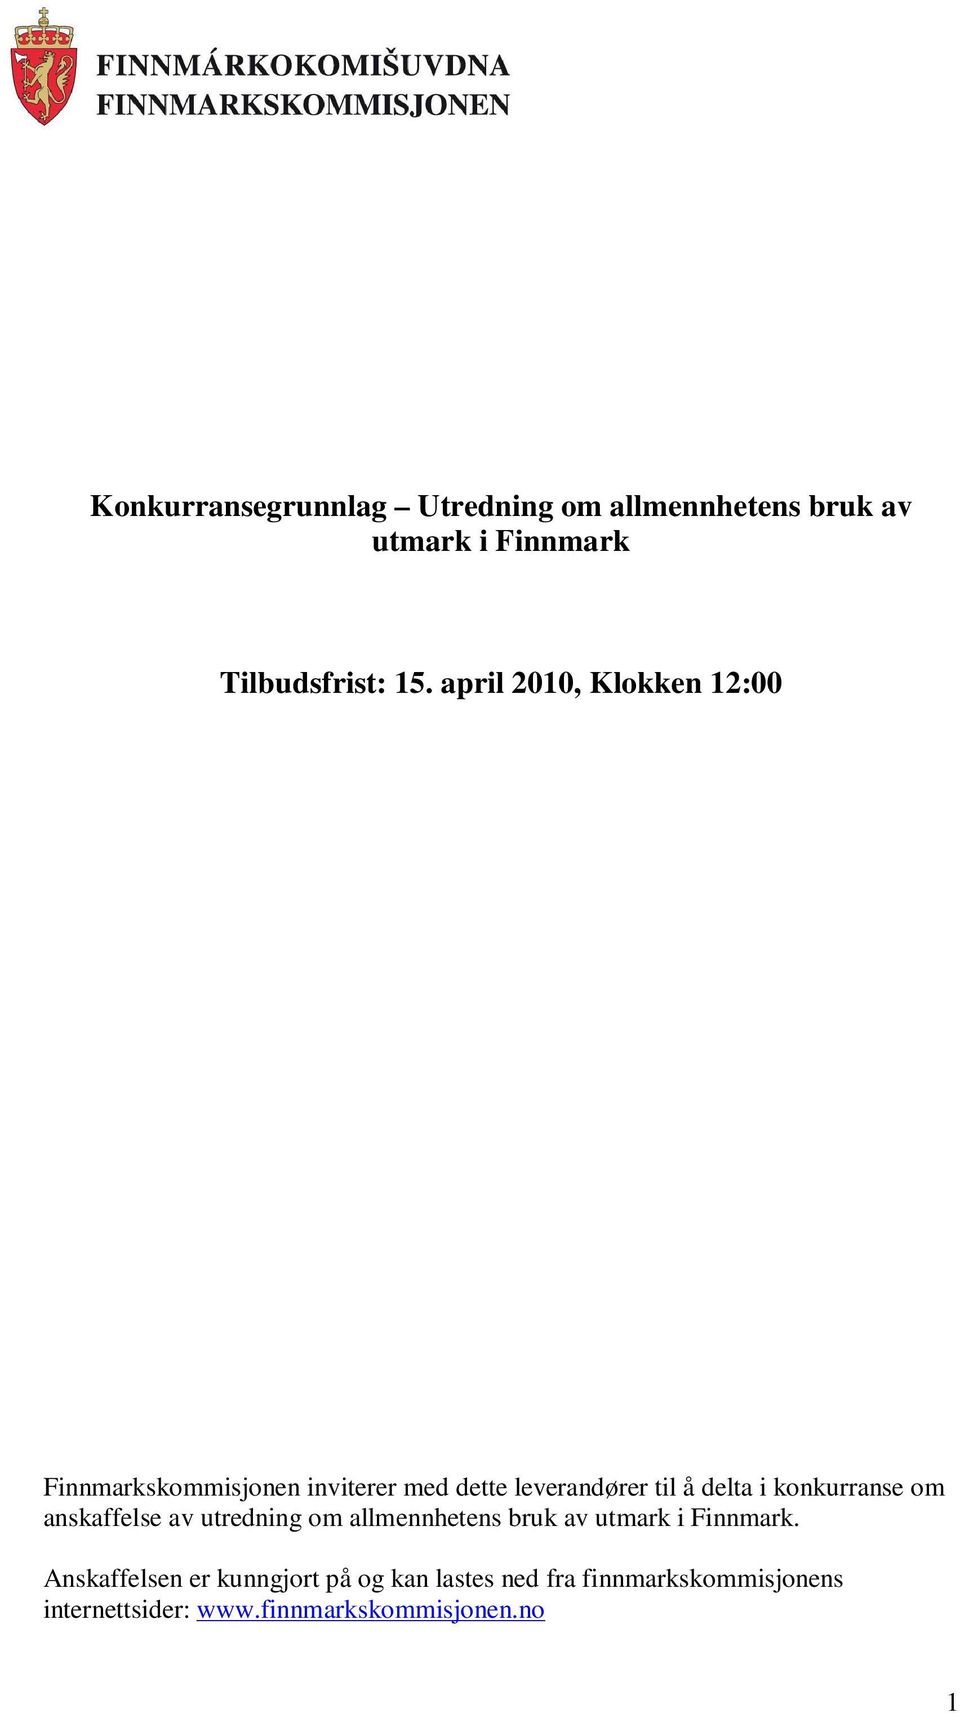 konkurranse om anskaffelse av utredning om allmennhetens bruk av utmark i Finnmark.